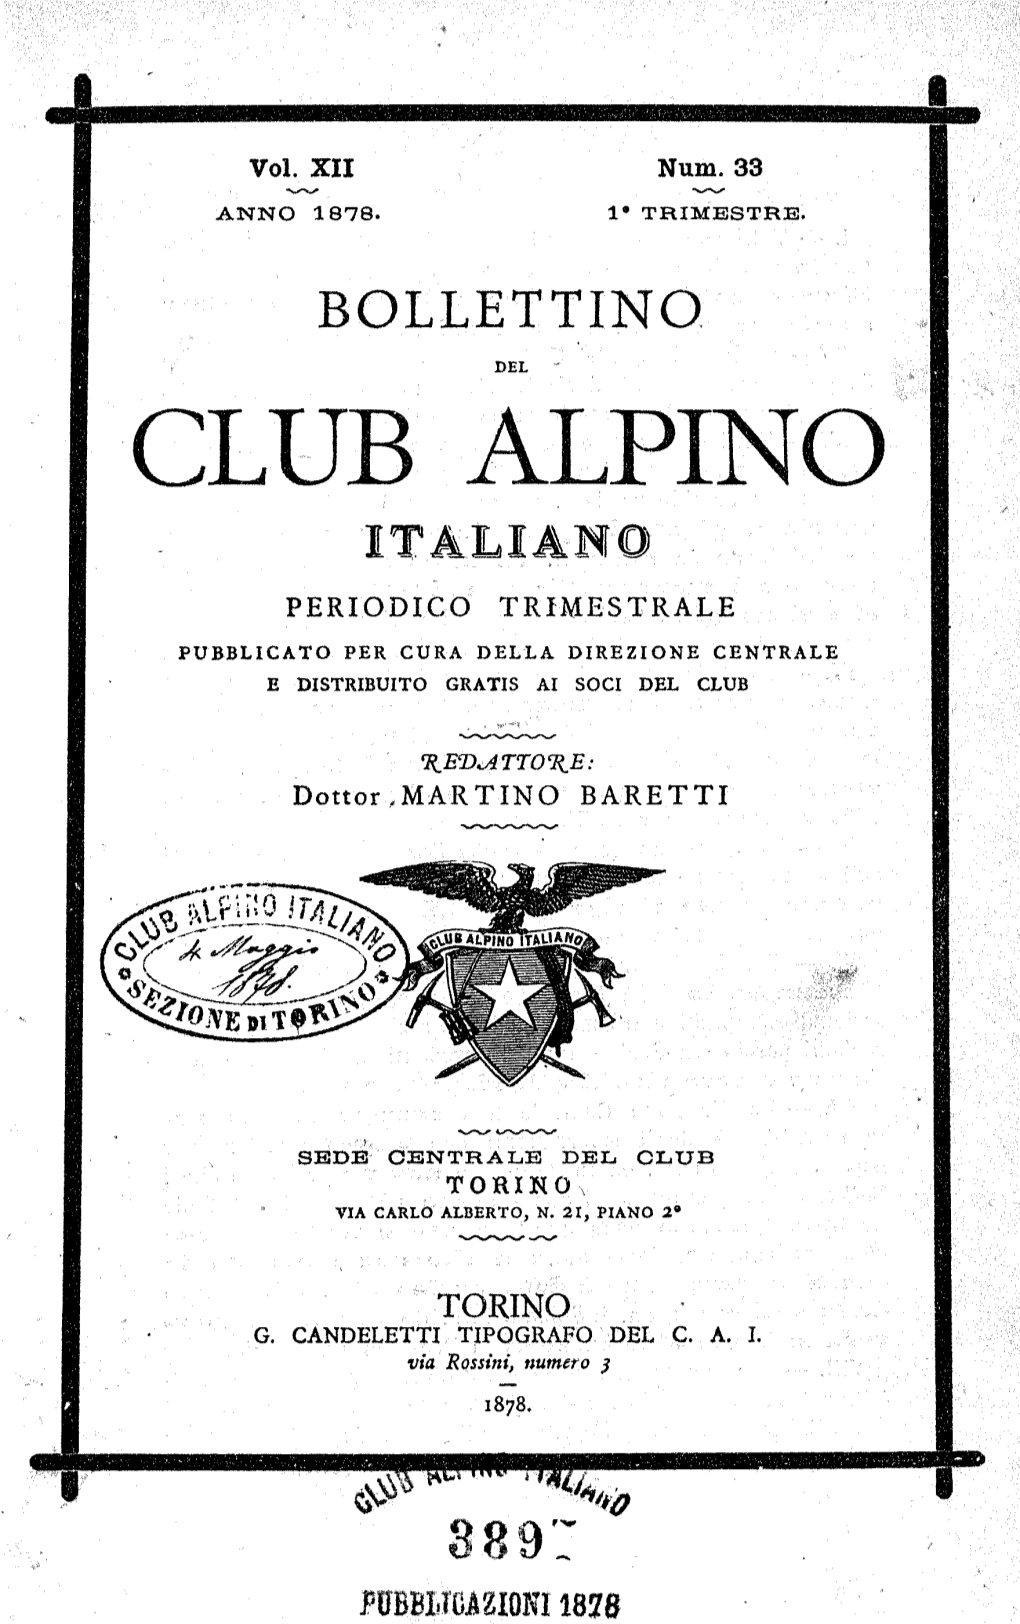 Club Alpino Italiano • Periodico Trimestrale